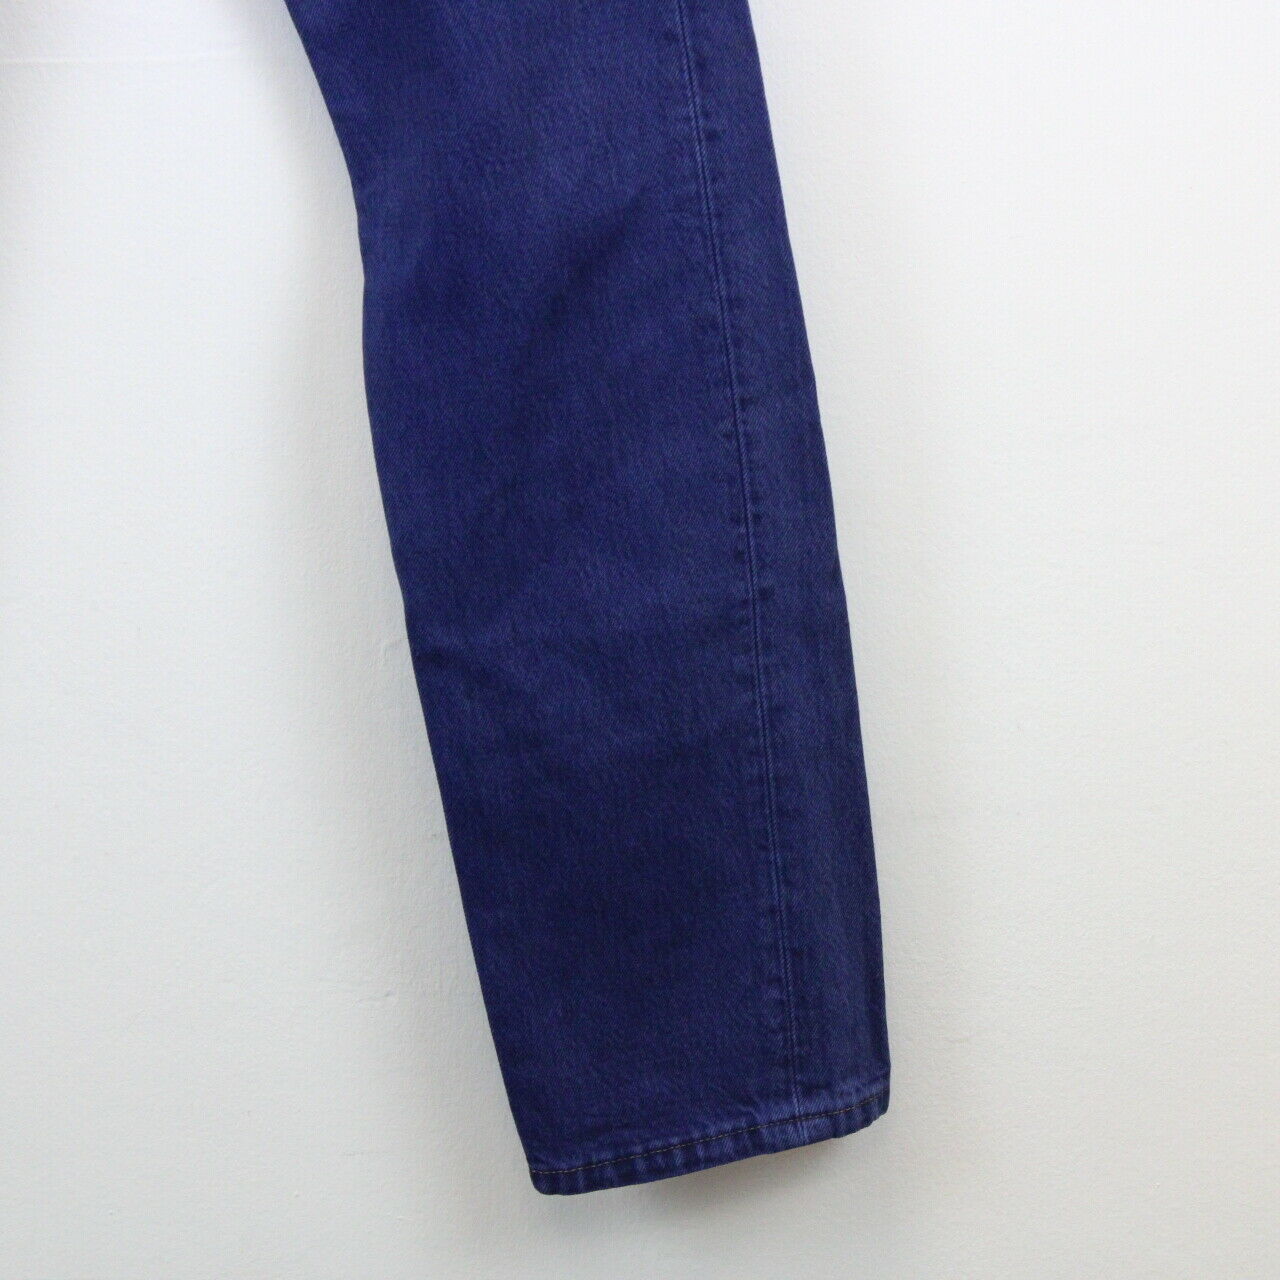 Womens LEVIS 501 Jeans Blue | W26 L32